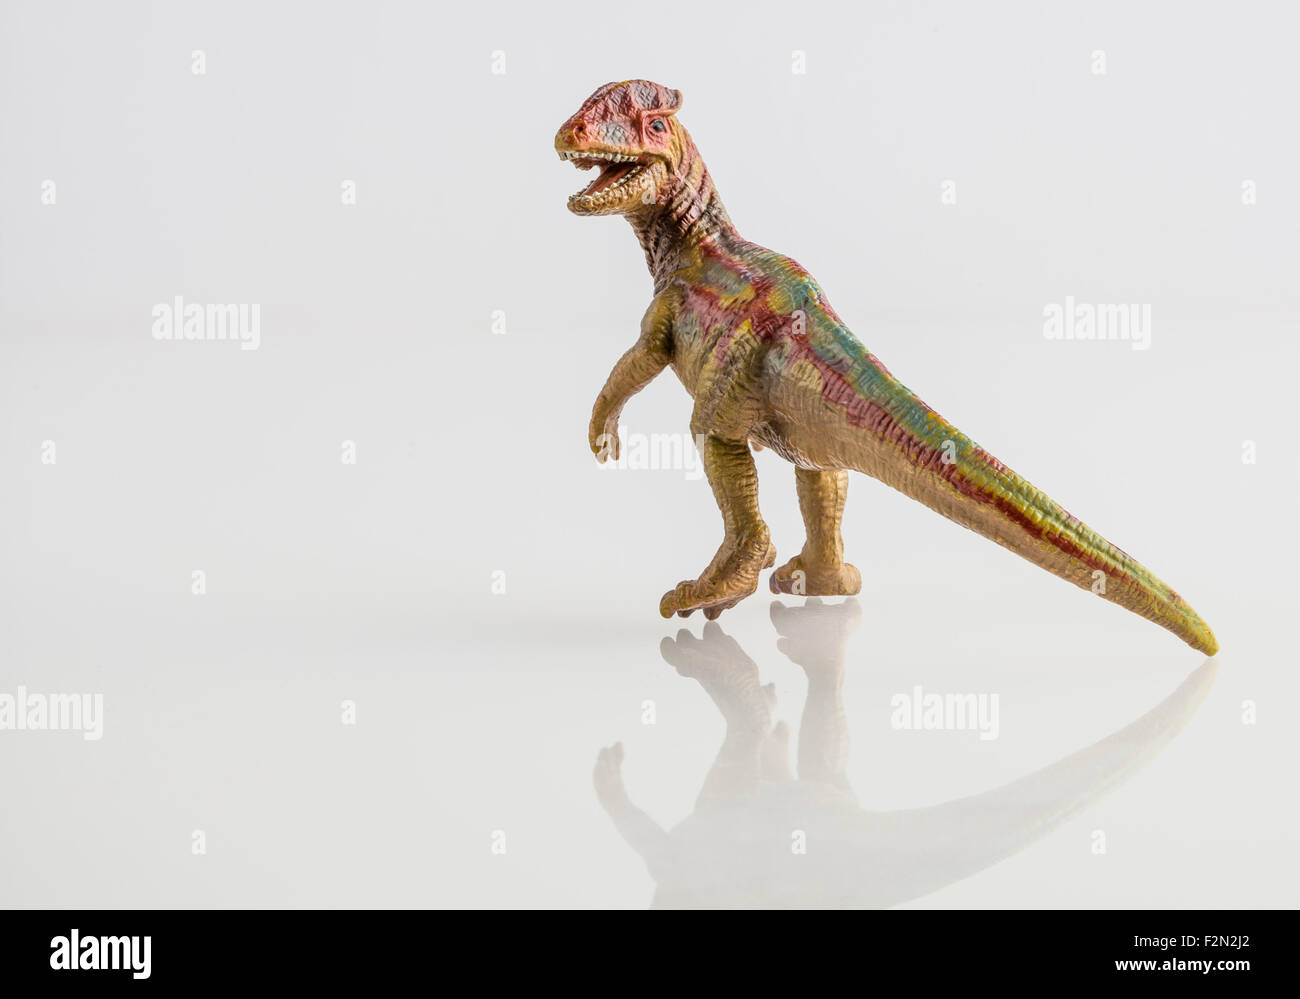 Gelbe Dinosaurier Spielzeug isoliert auf weiss Stockfoto